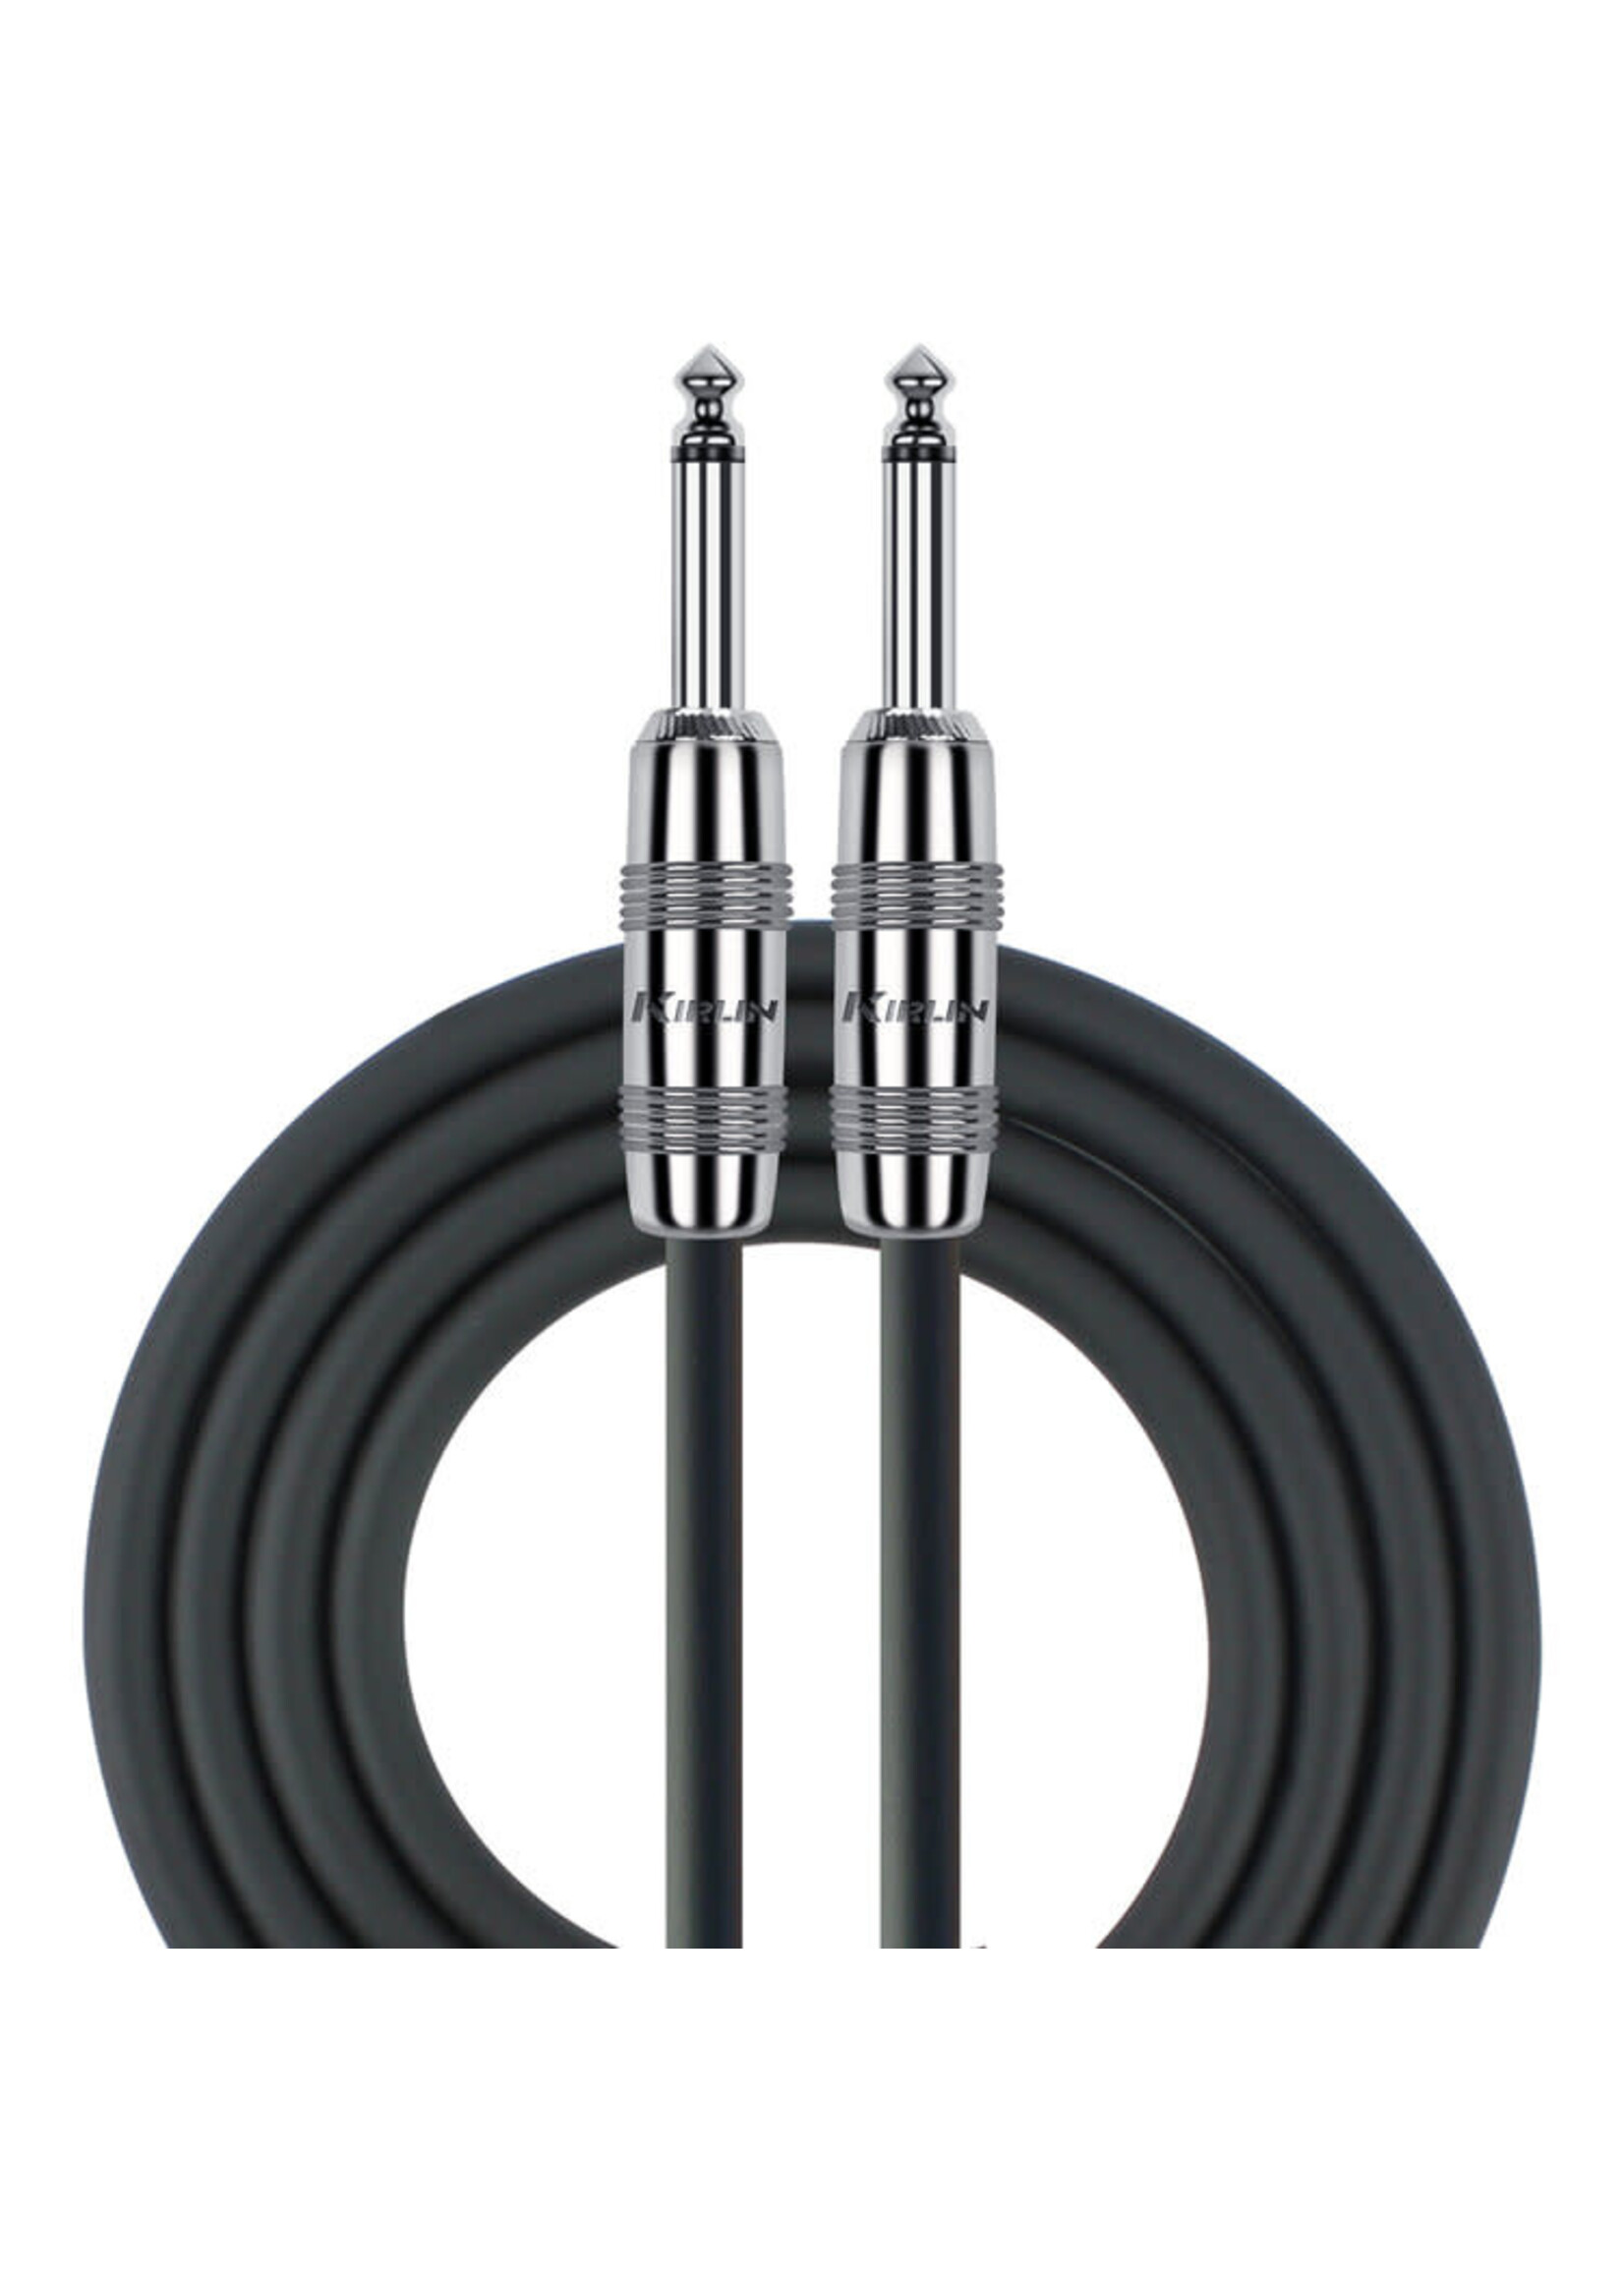 Kirlin Kirlin SBC-166PN-50 Speaker Cable 16 Gauge 1/4 to 1/4, 50 FT